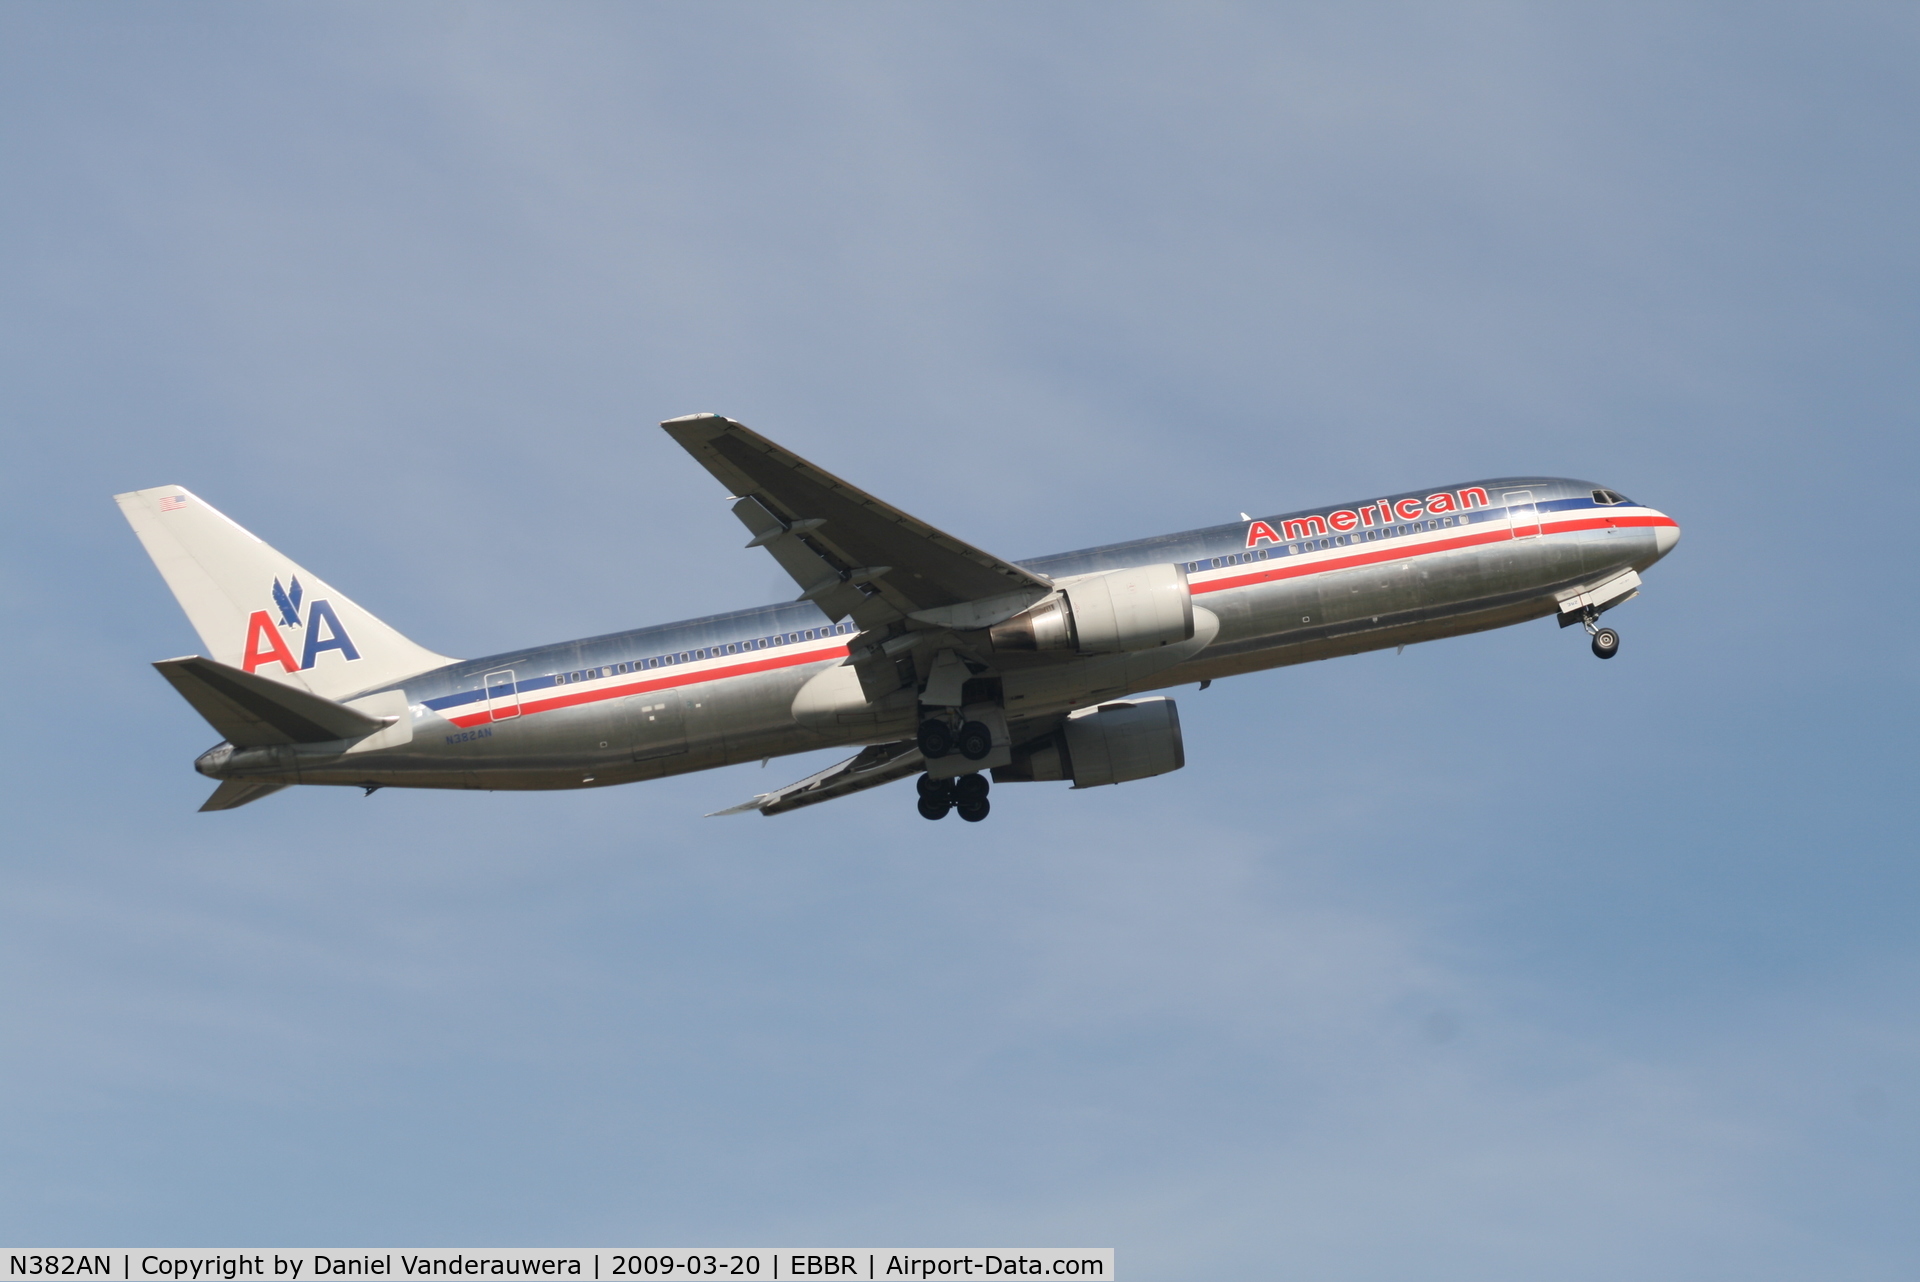 N382AN, 1993 Boeing 767-323/ER C/N 25451, Flight AA089 is taking off from RWY 07R